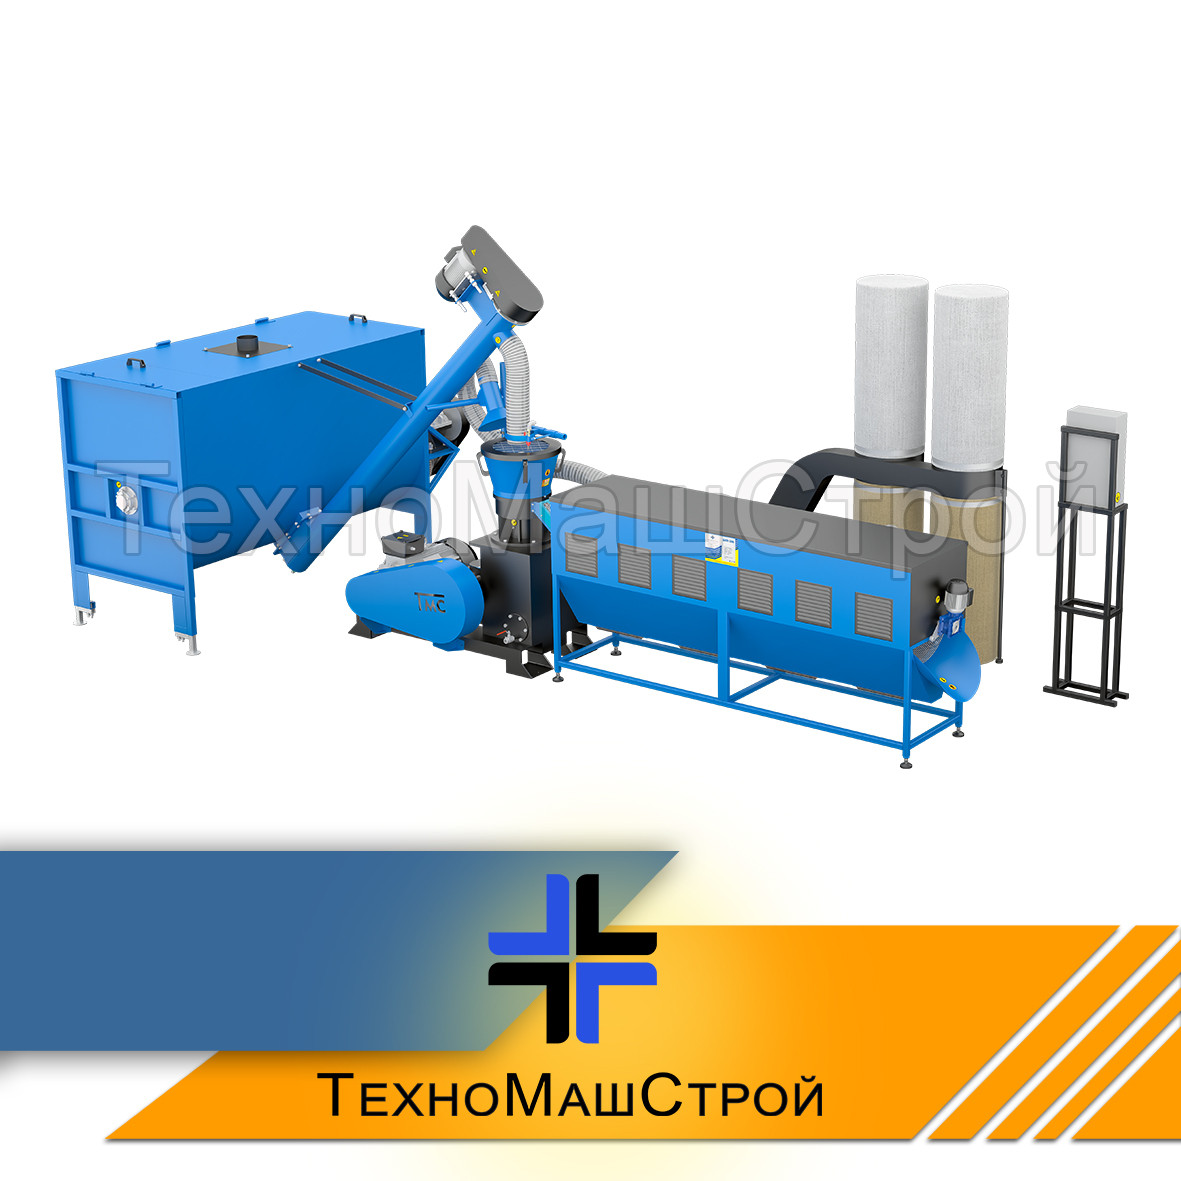 Обладнання для виробництва пелет і комбікорму МЛГ-1000 MAX (продуктивність 700 кг/год)